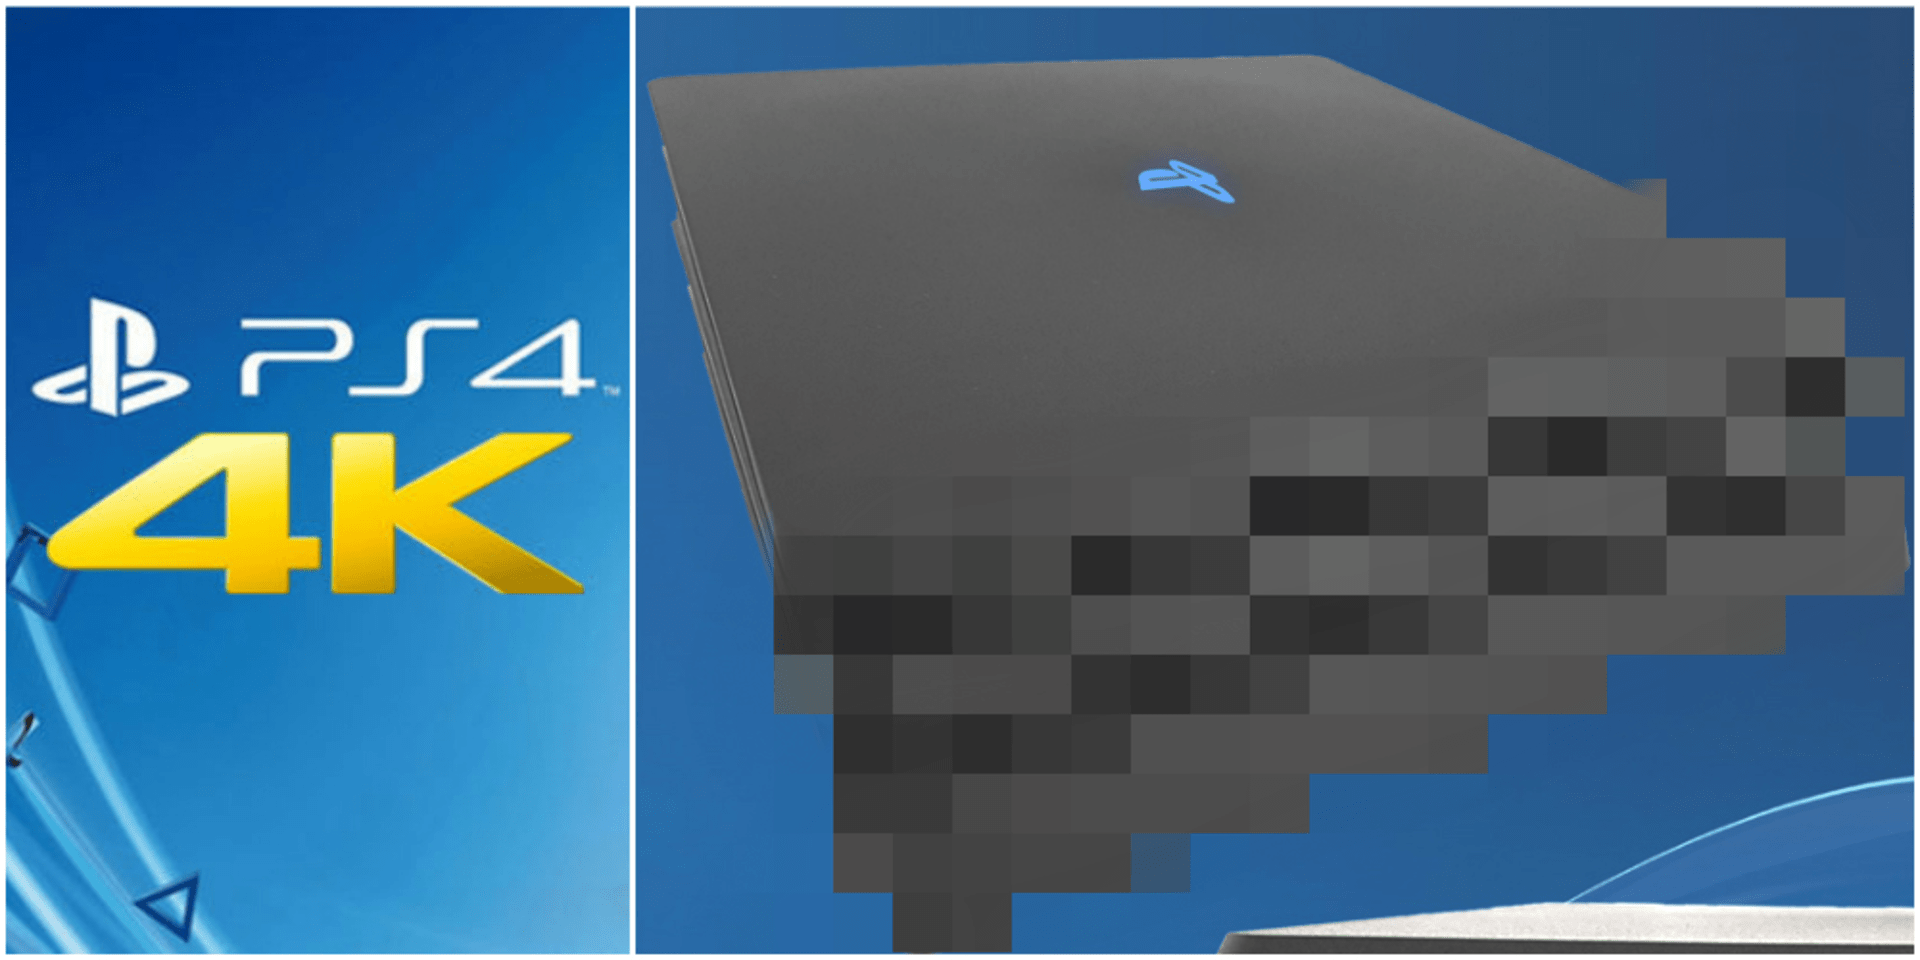 Údajná podoba nového PlayStation 4 Neo